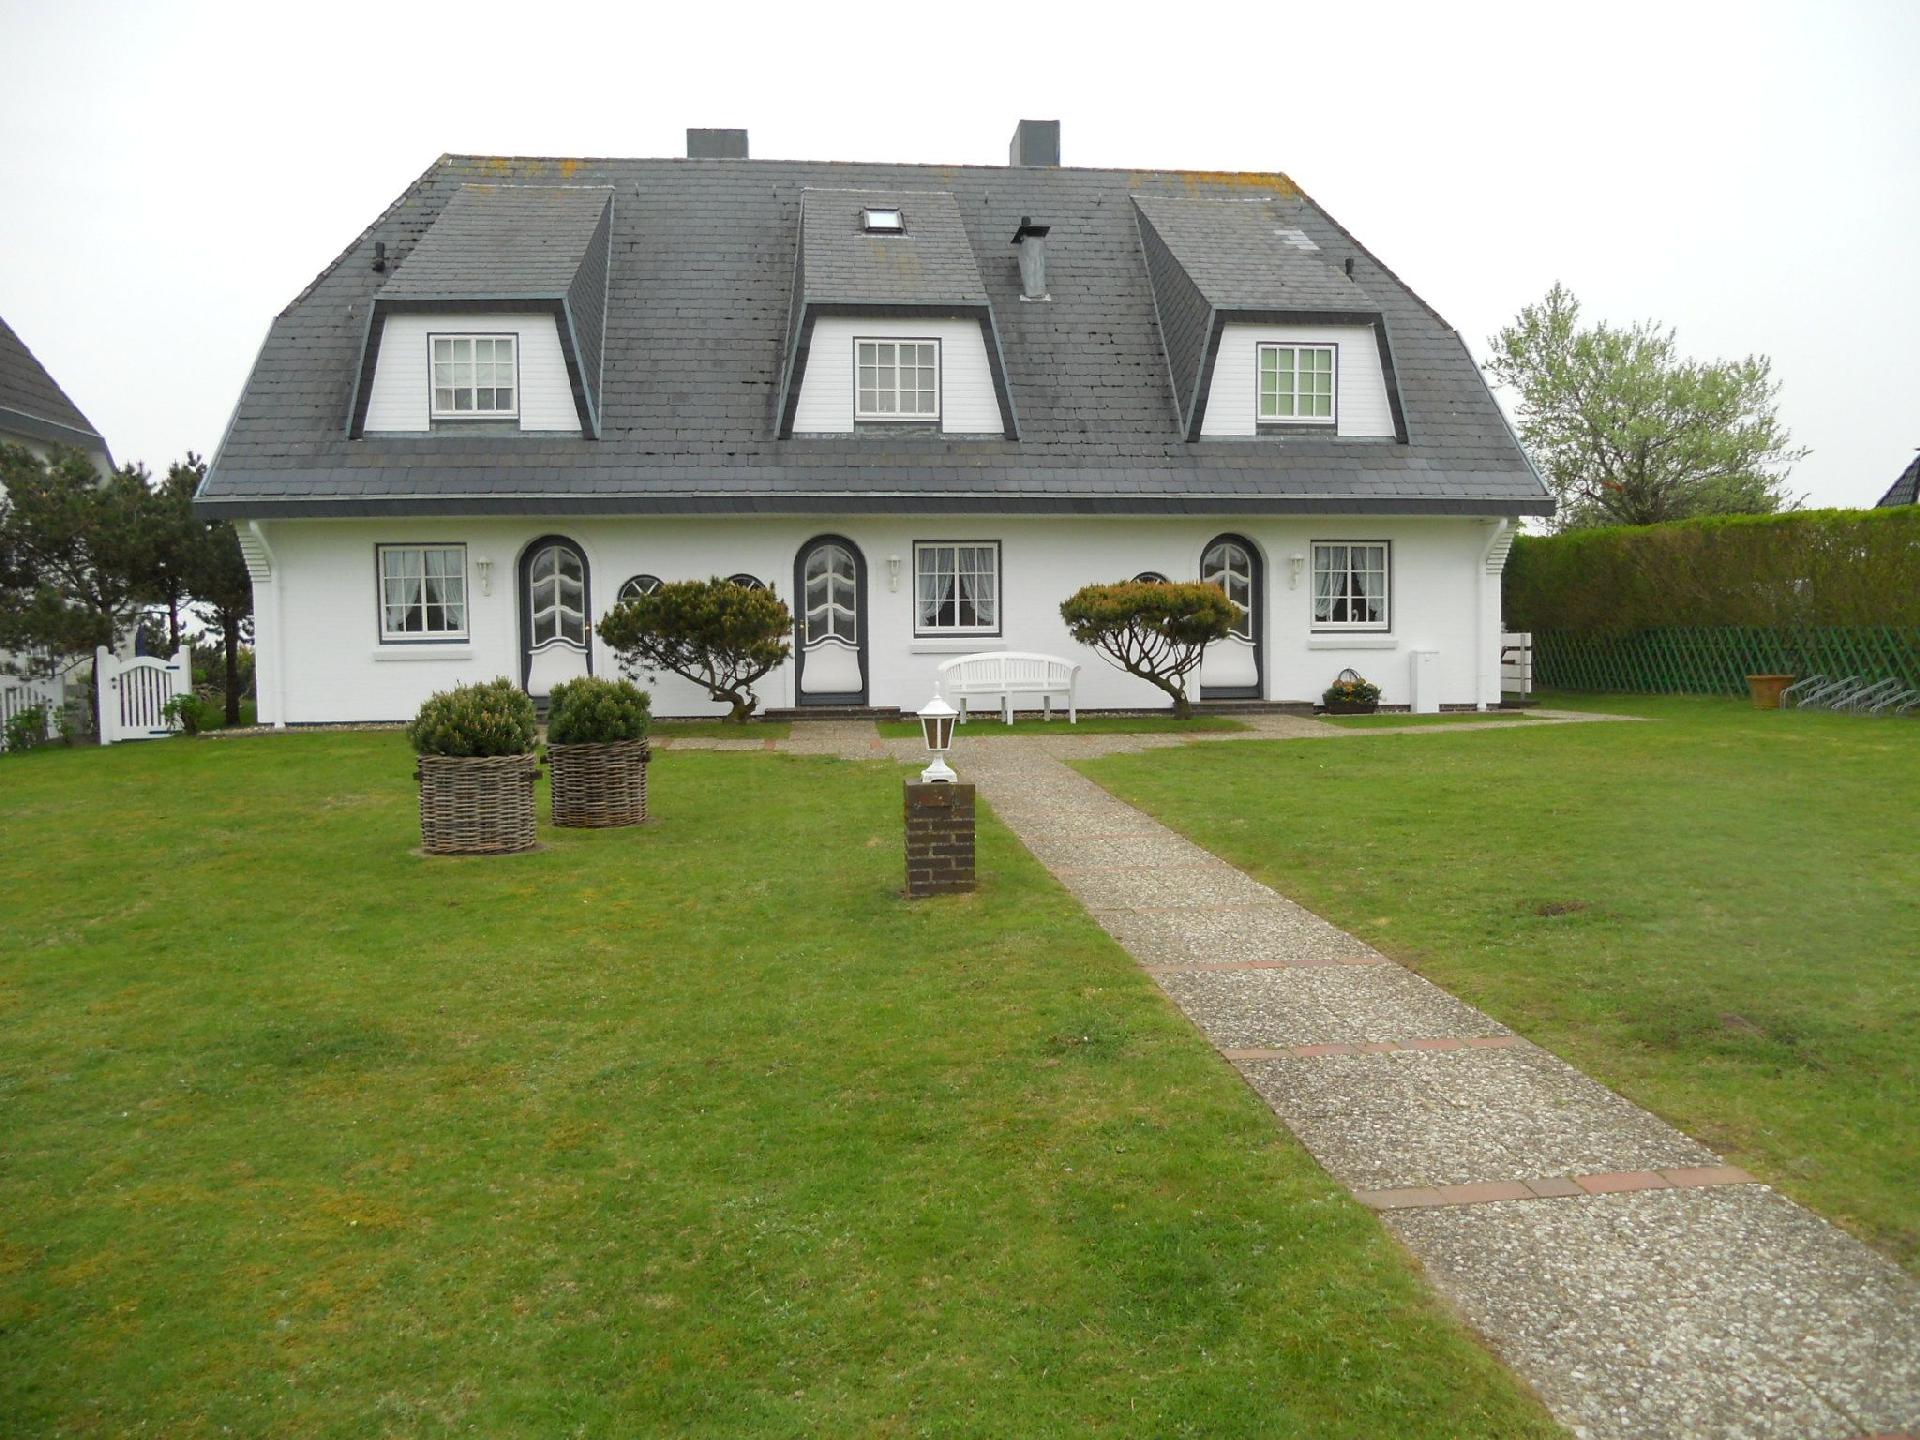 Ferienwohnung für 2 Personen ca. 55 m² i Ferienwohnung in Schleswig Holstein